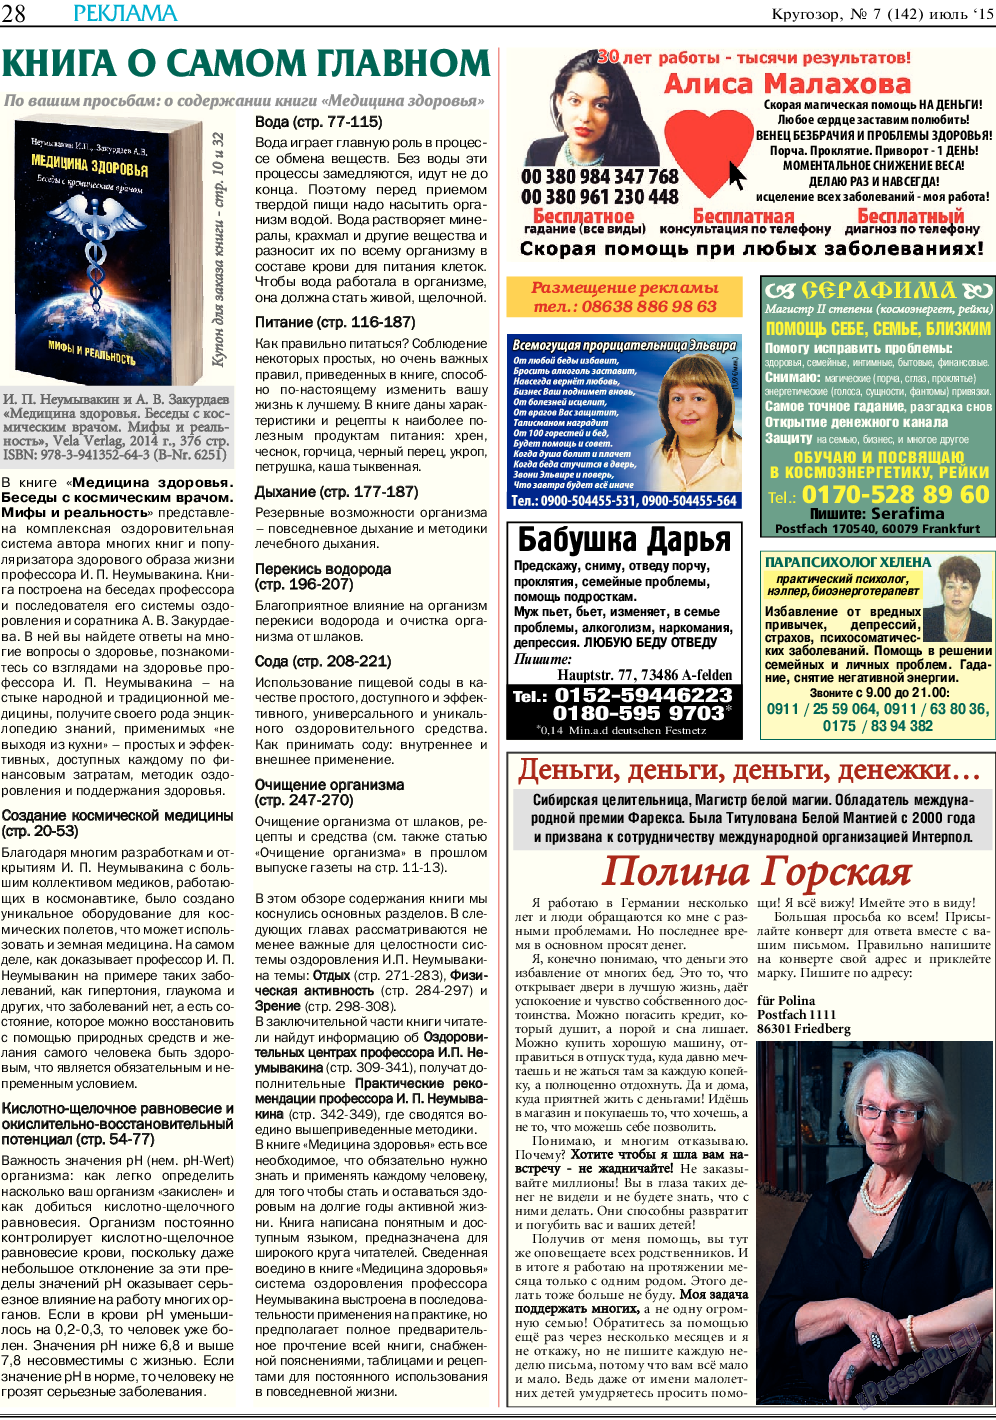 Кругозор, газета. 2015 №7 стр.28